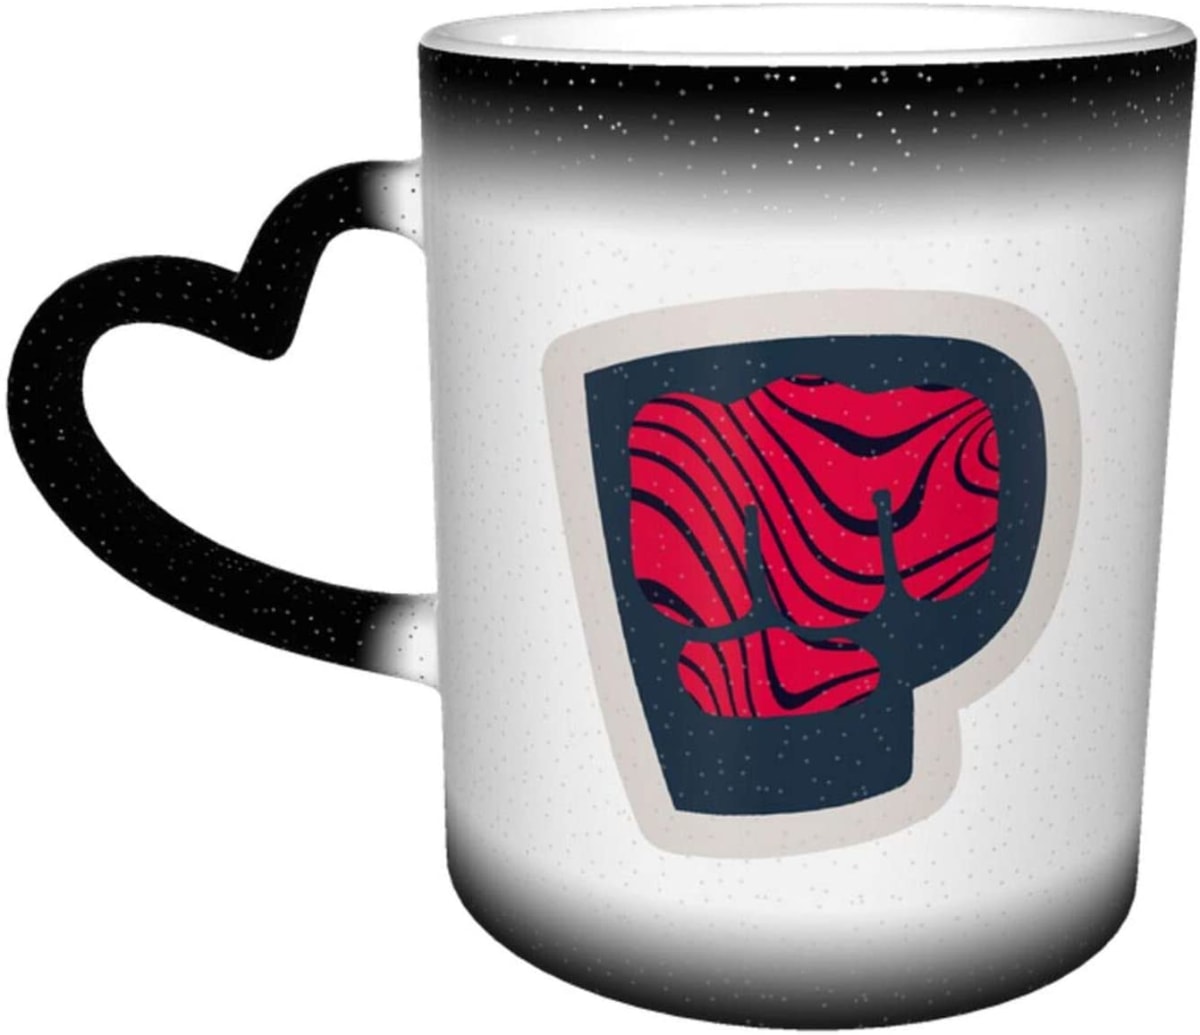 Pewdiepie Logo Ceramic Thermo-Sensitive Discoloration Cup Ceramic Cup Ceramic Coffee Cup